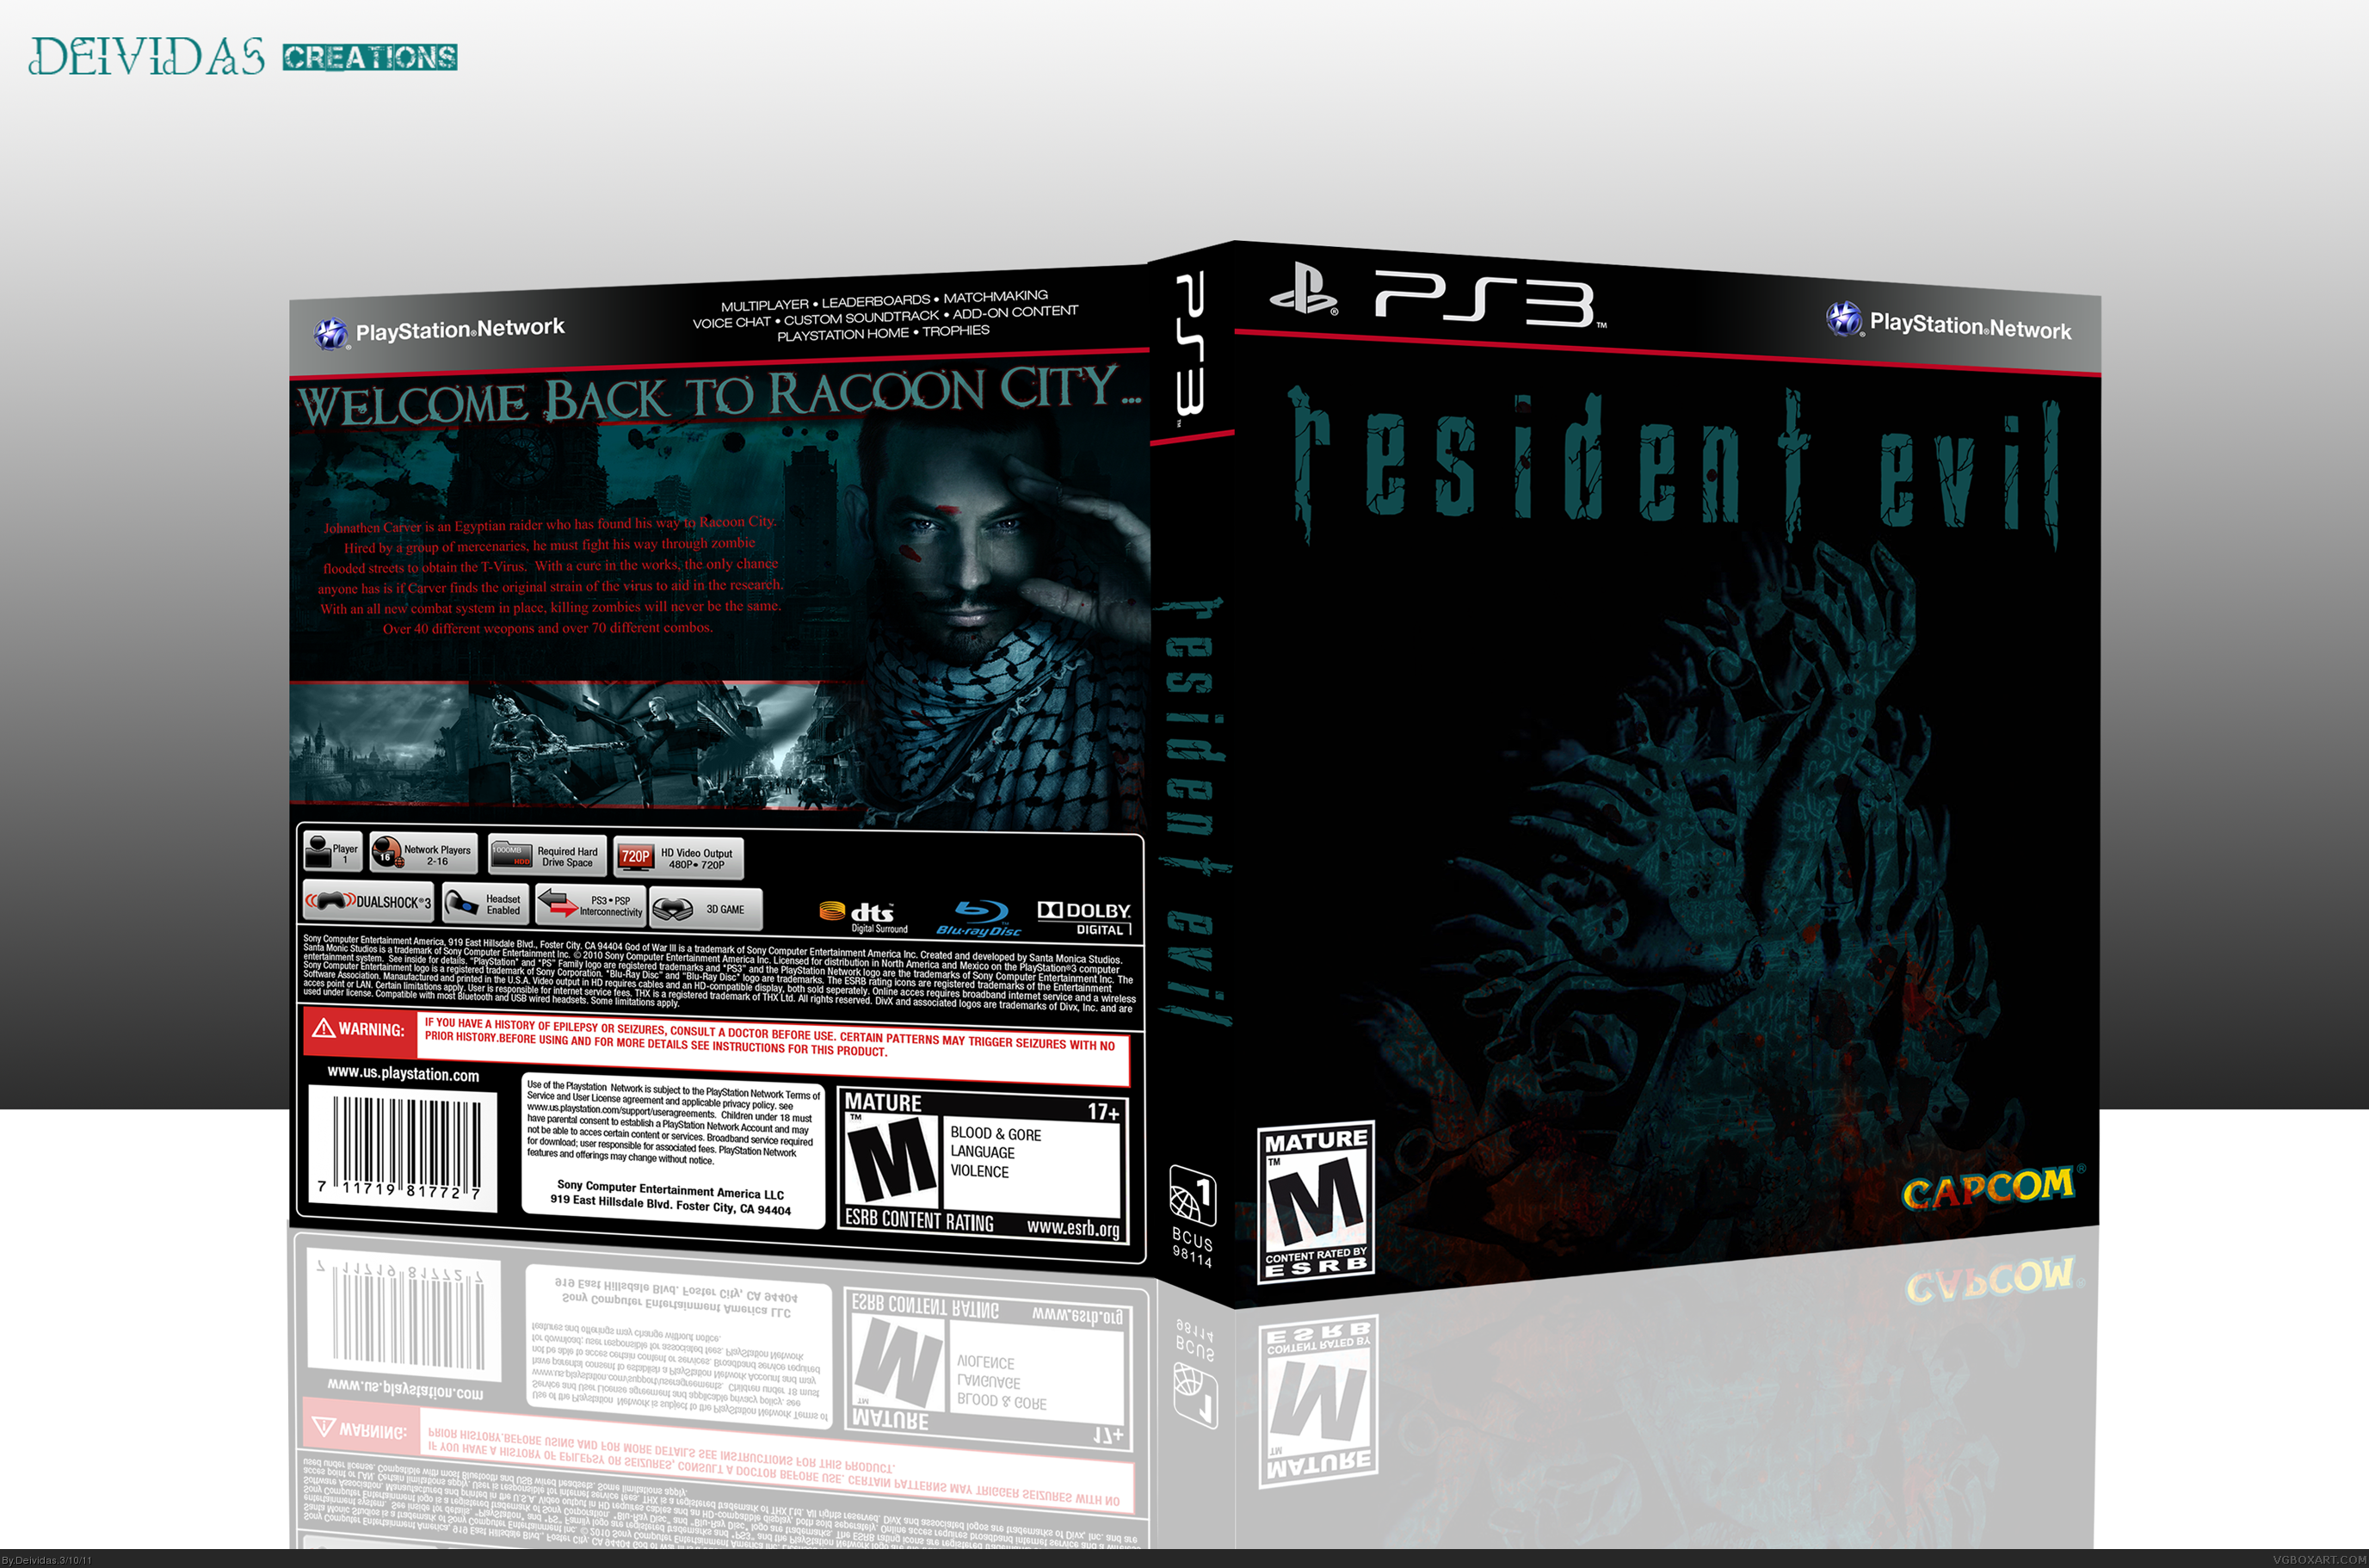 Resident Evil box cover